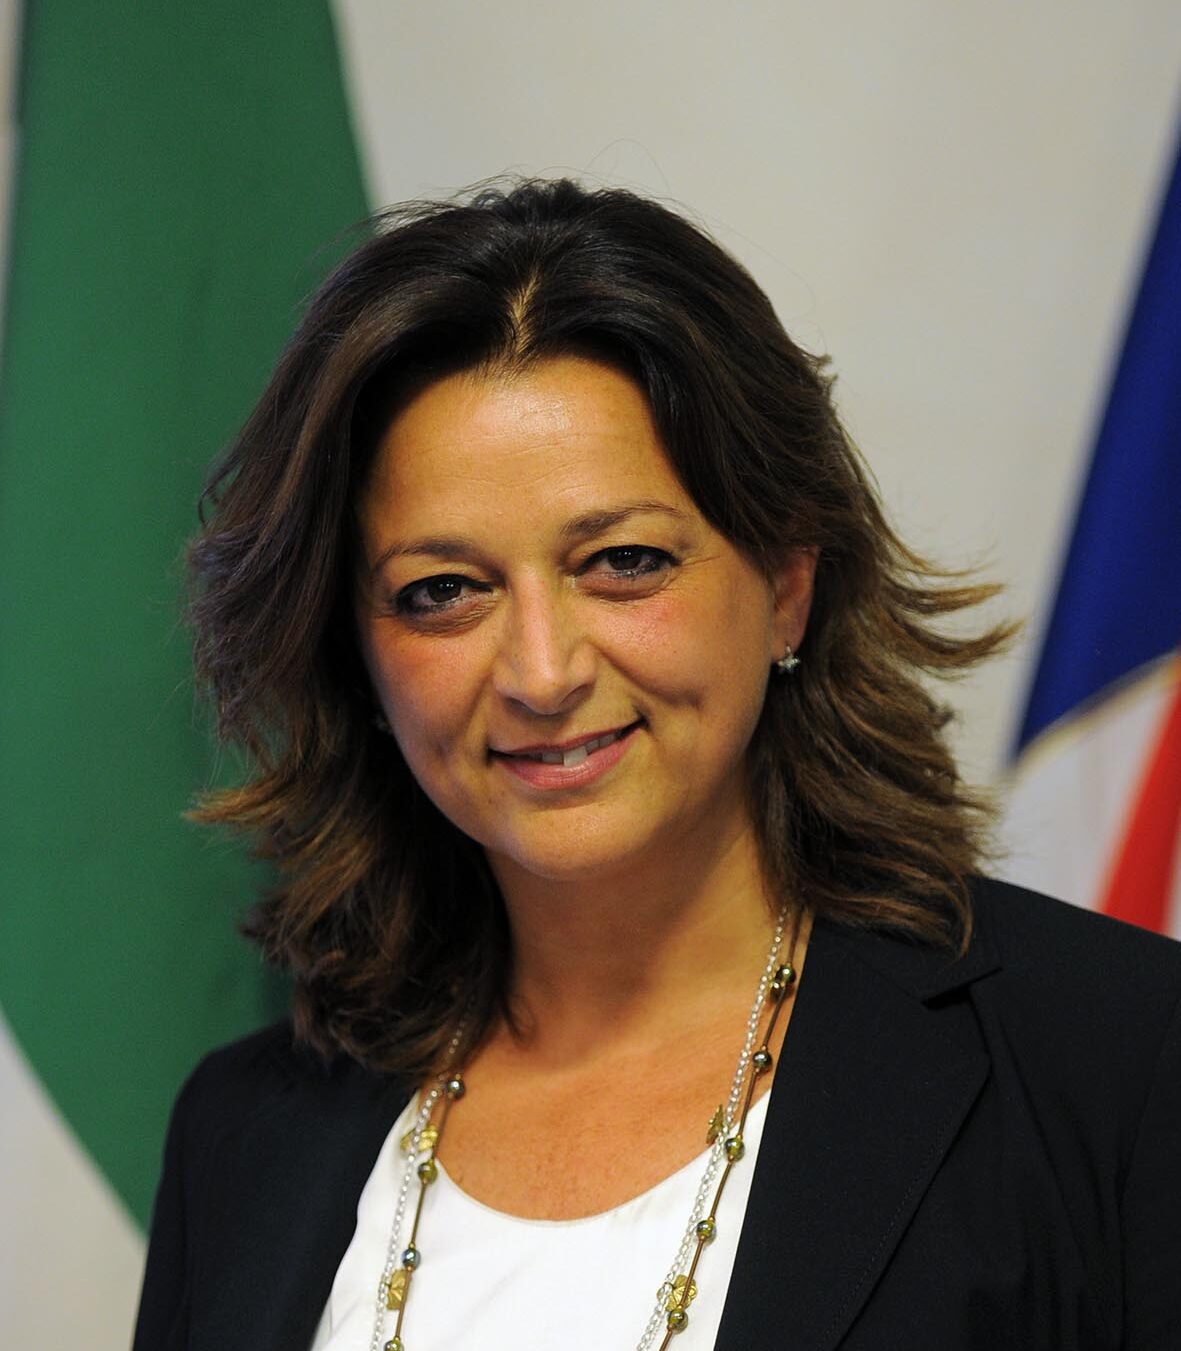 Valeria Fascione